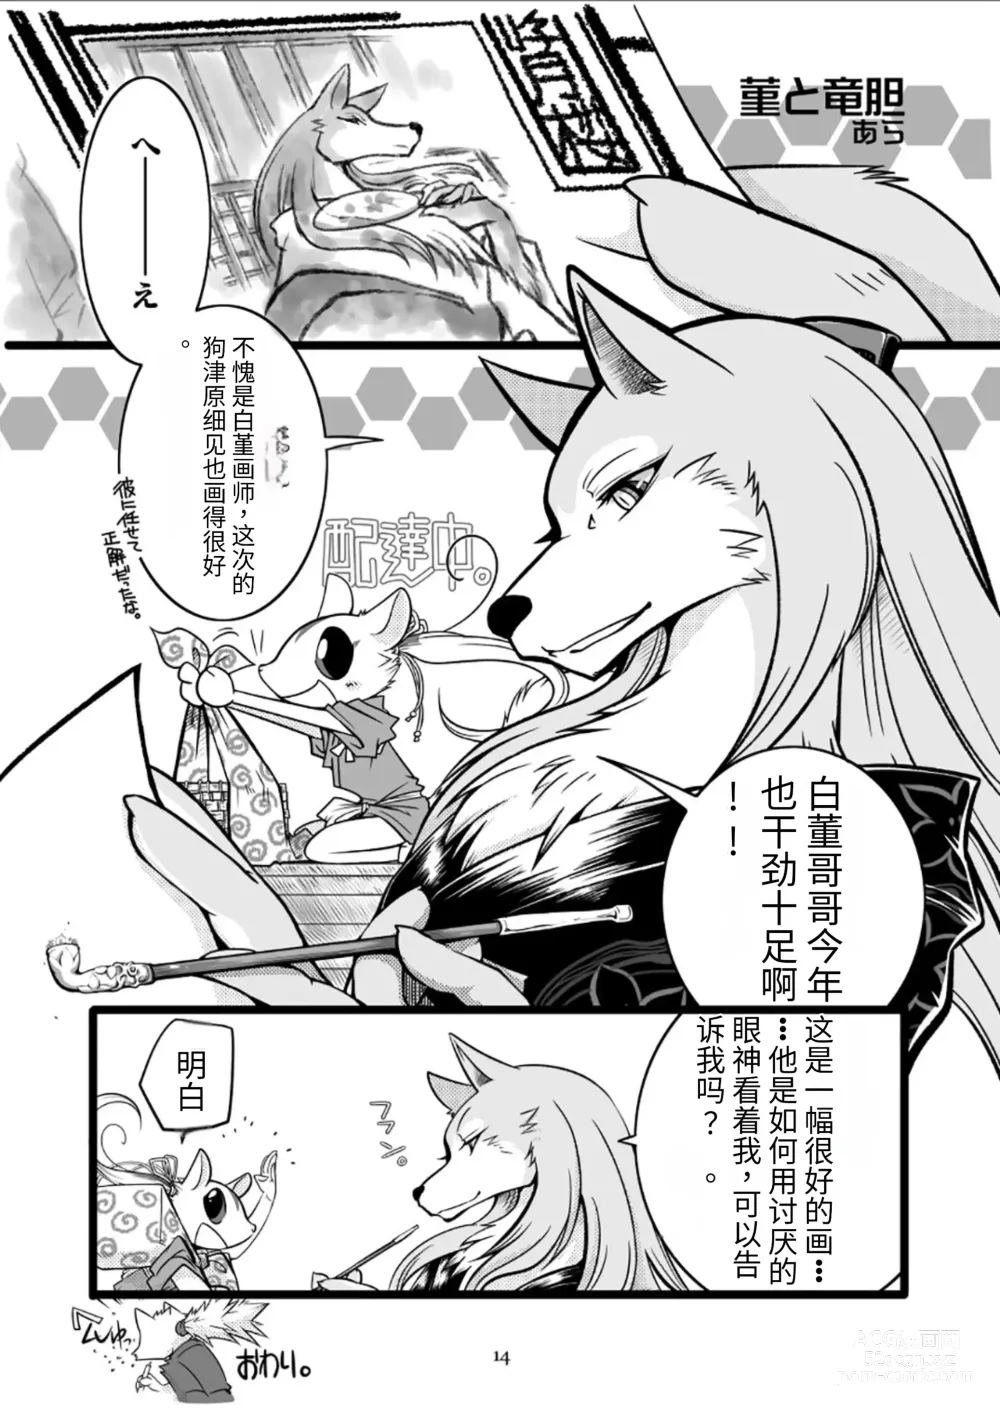 Page 14 of doujinshi 狗津原细见